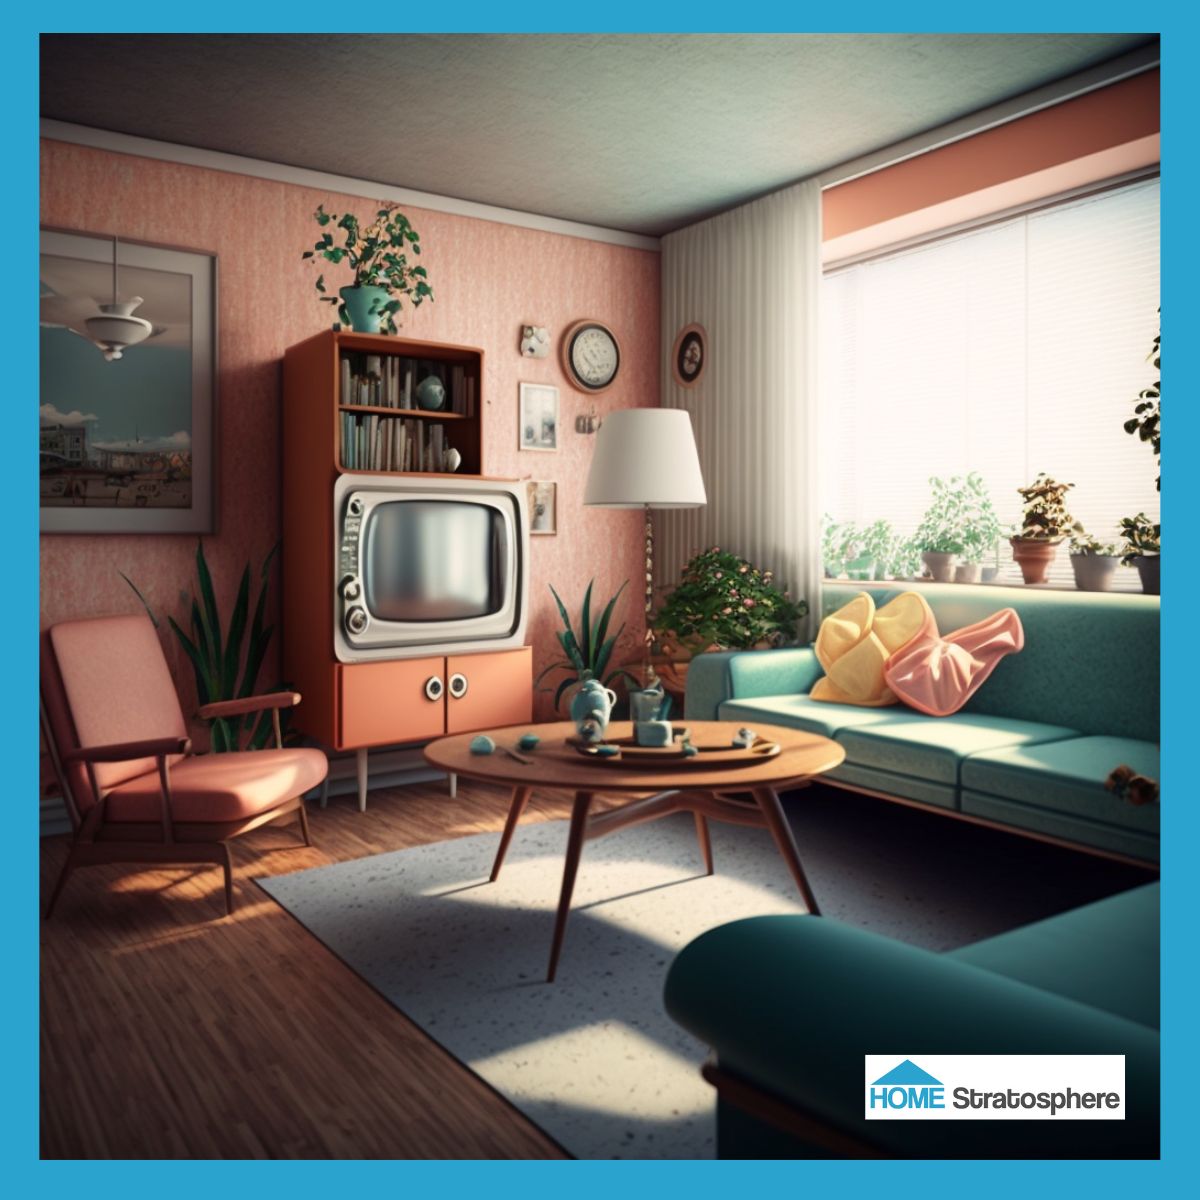 客厅里最有趣的特色之一是复古风格的电视，它有内置的架子，可以提供额外的存储空间。房间里摆满了彩色的中世纪现代家具，比如一把桃红色的扶手椅和一张亮蓝绿色的沙发。桃色和黄色的抱枕有着独特的形状，赋予了房间个性。这间客厅也有大量的绿色植物，包括窗台上的一长排植物。